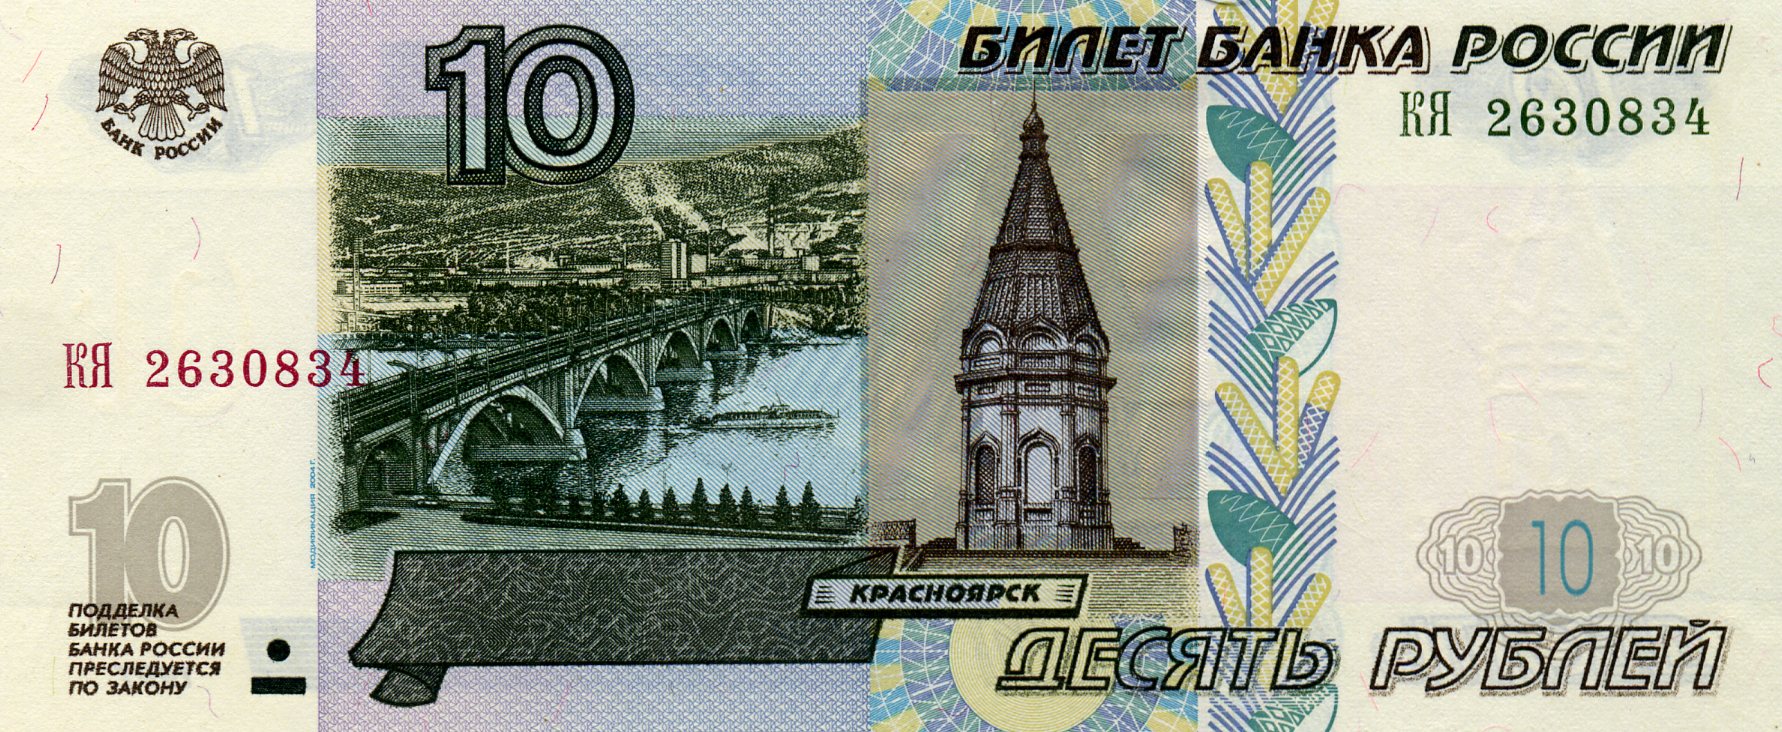 10 рублей 1997 года. Аверс. Реферат Рефератович.